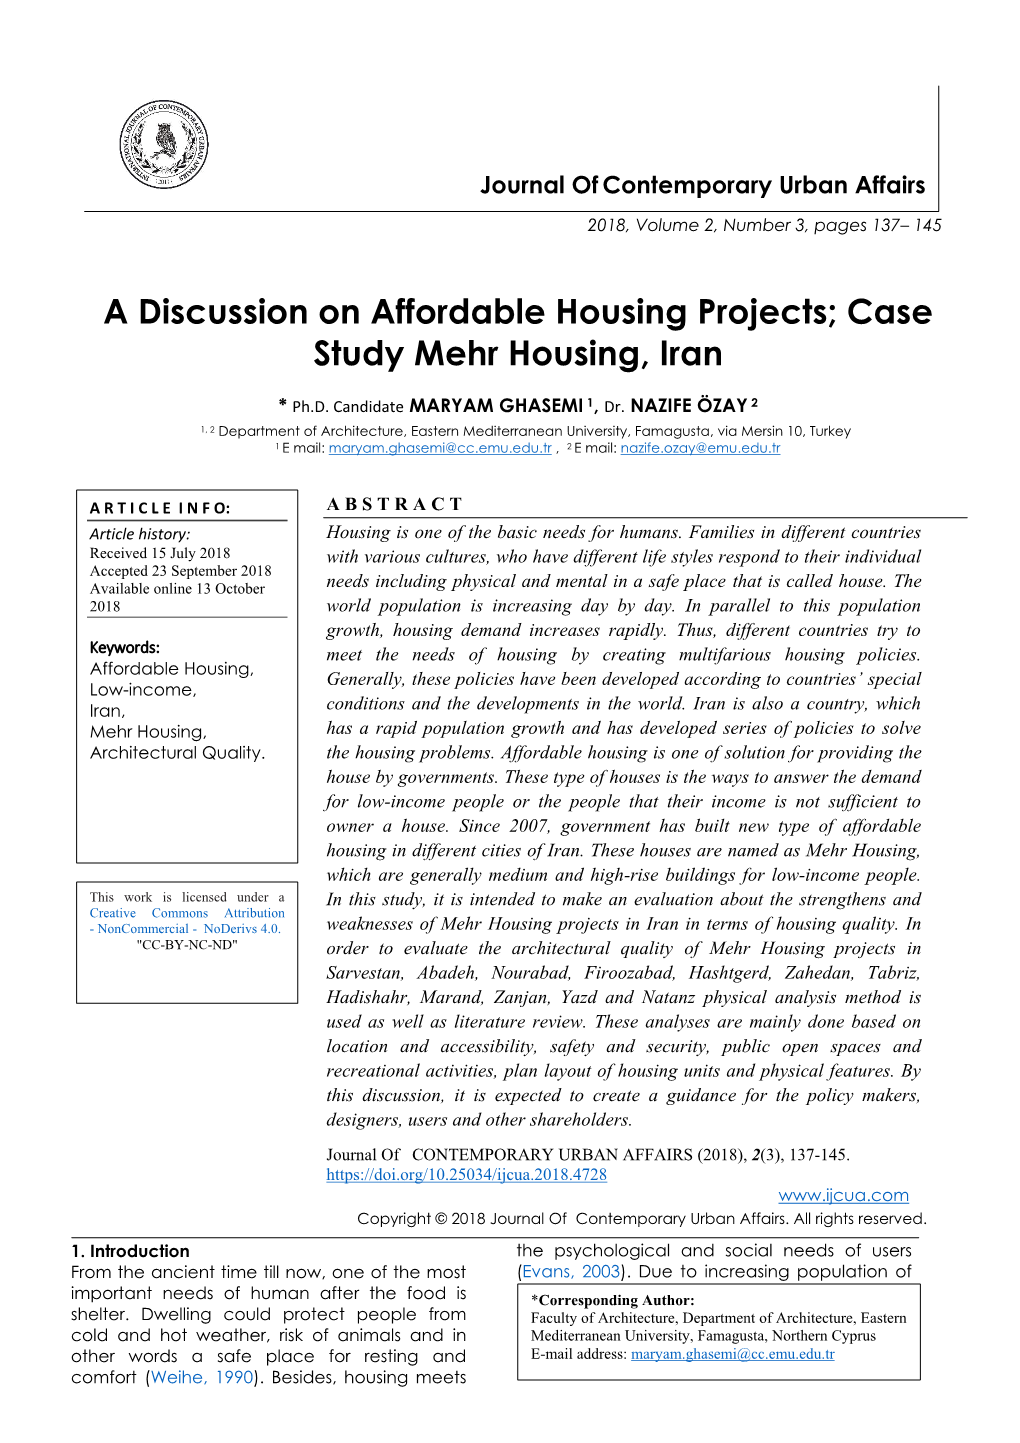 Case Study Mehr Housing, Iran